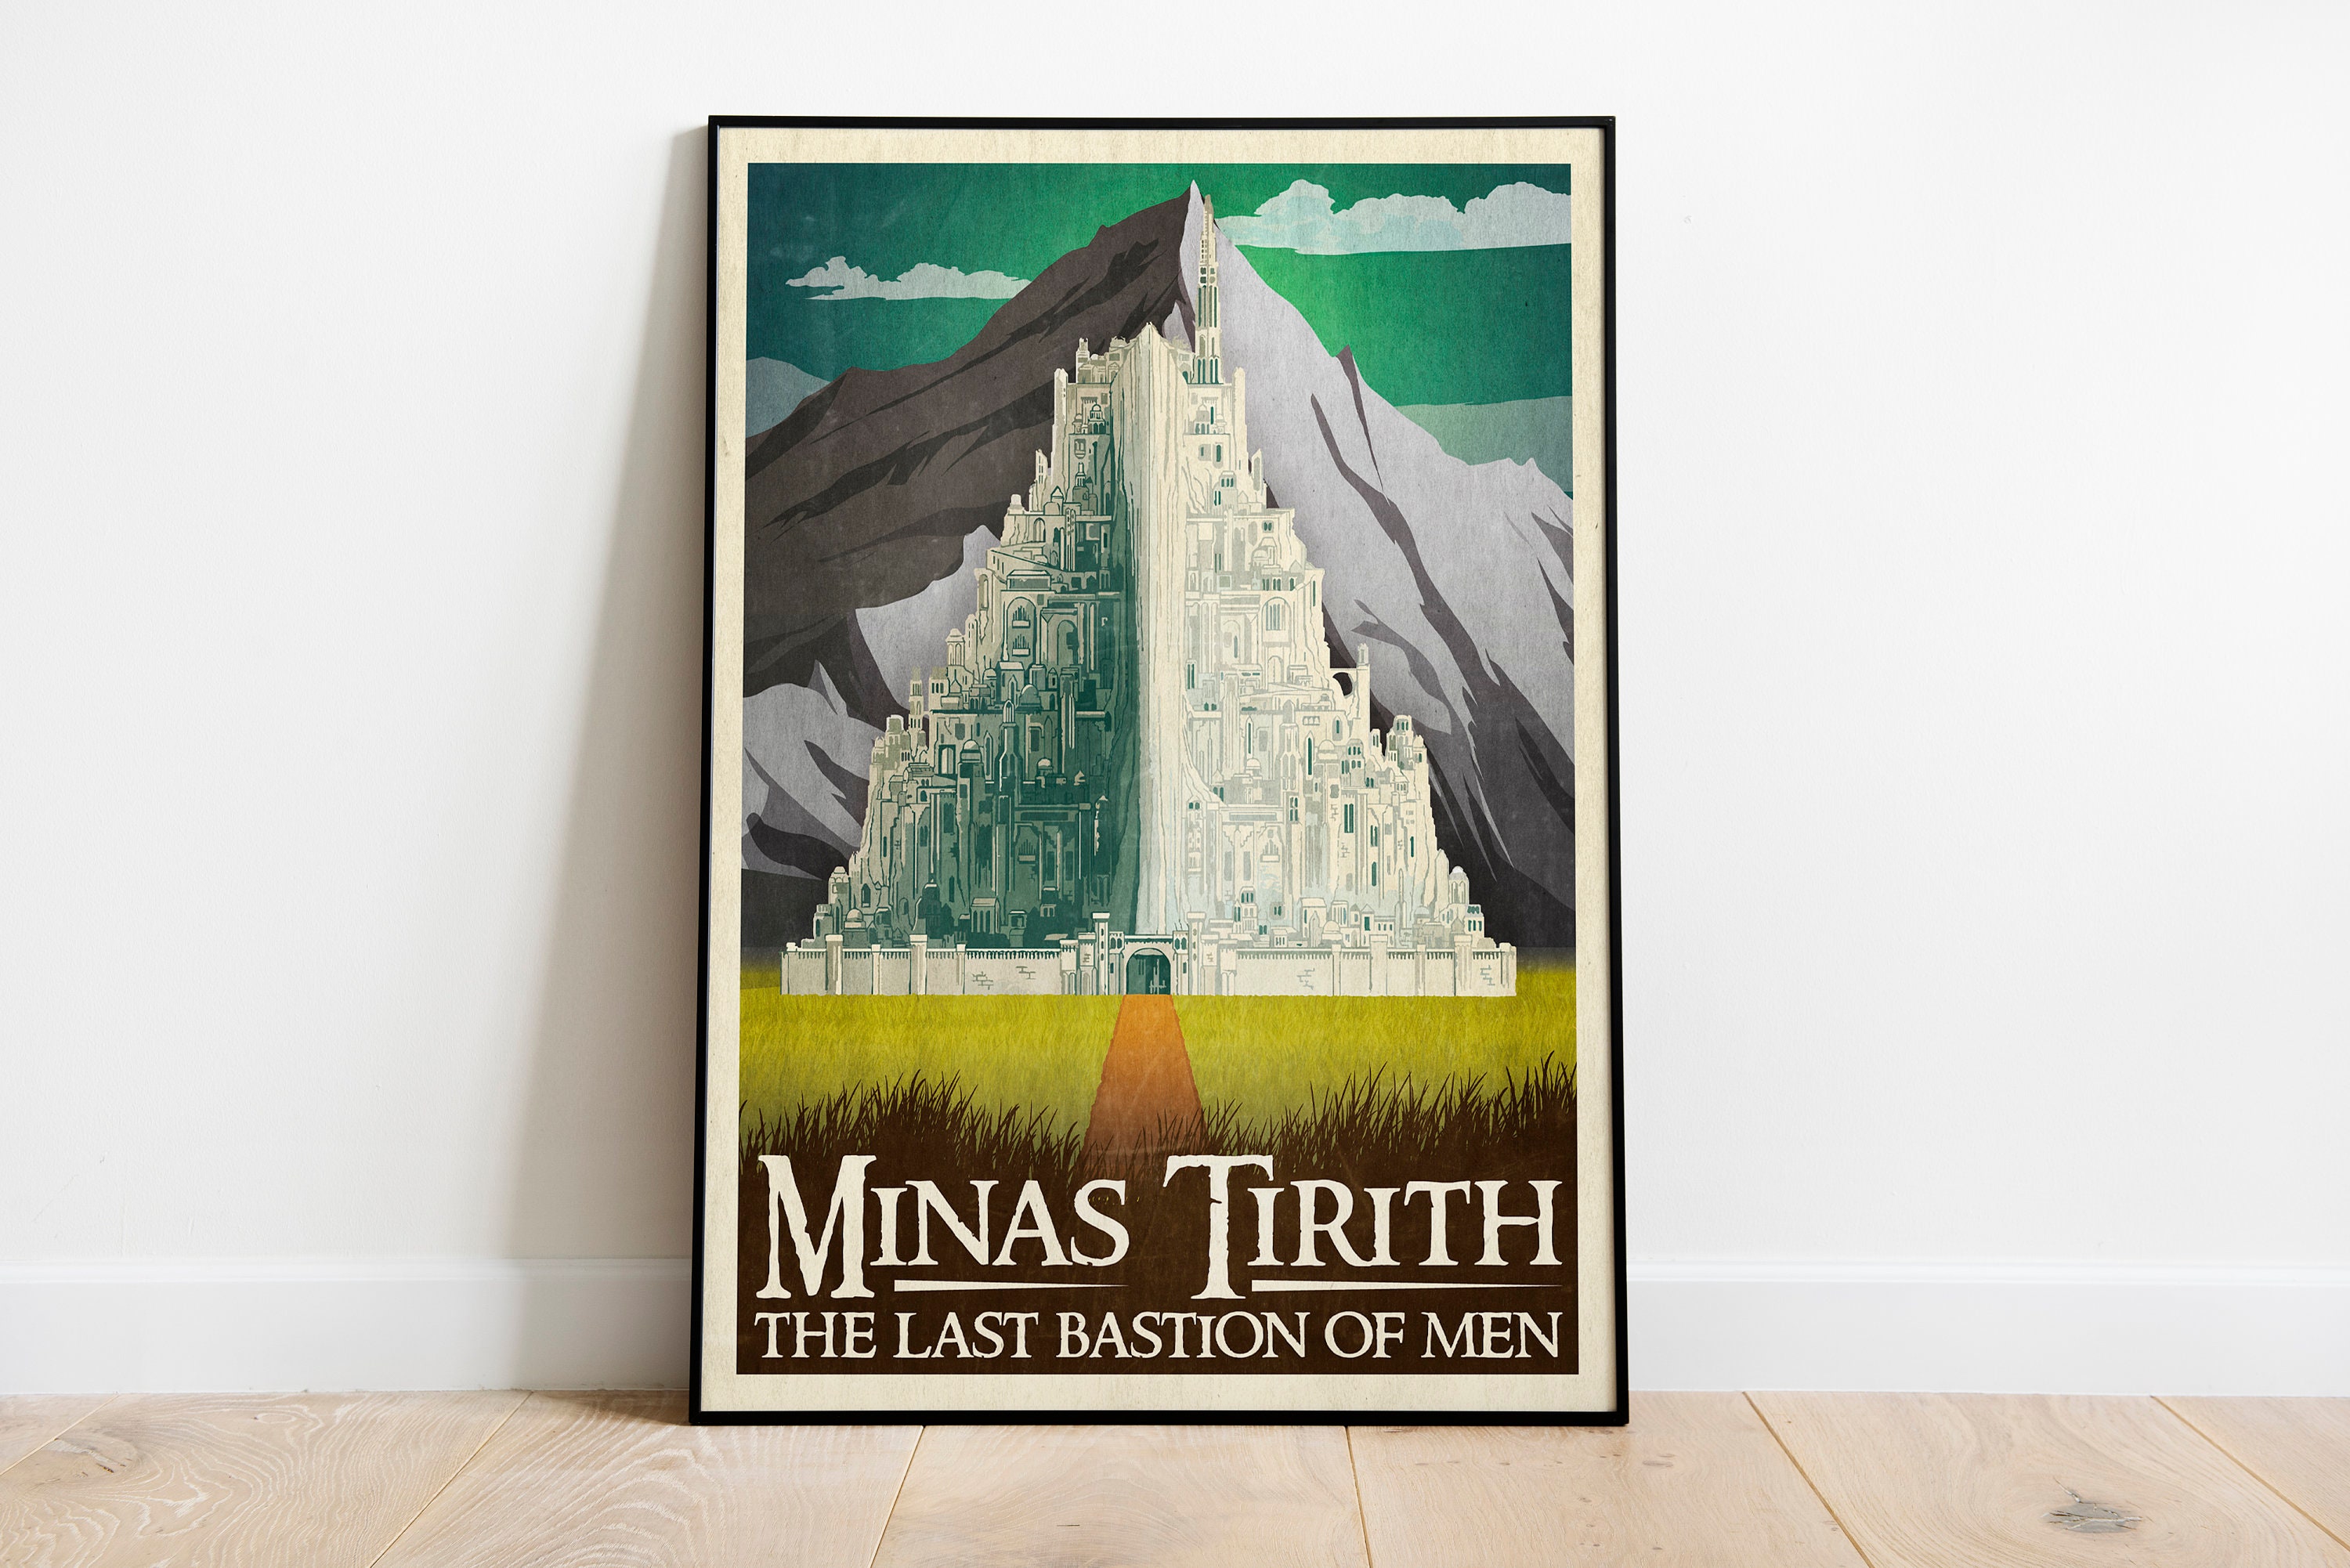 Minas tirith : r/lordoftherings